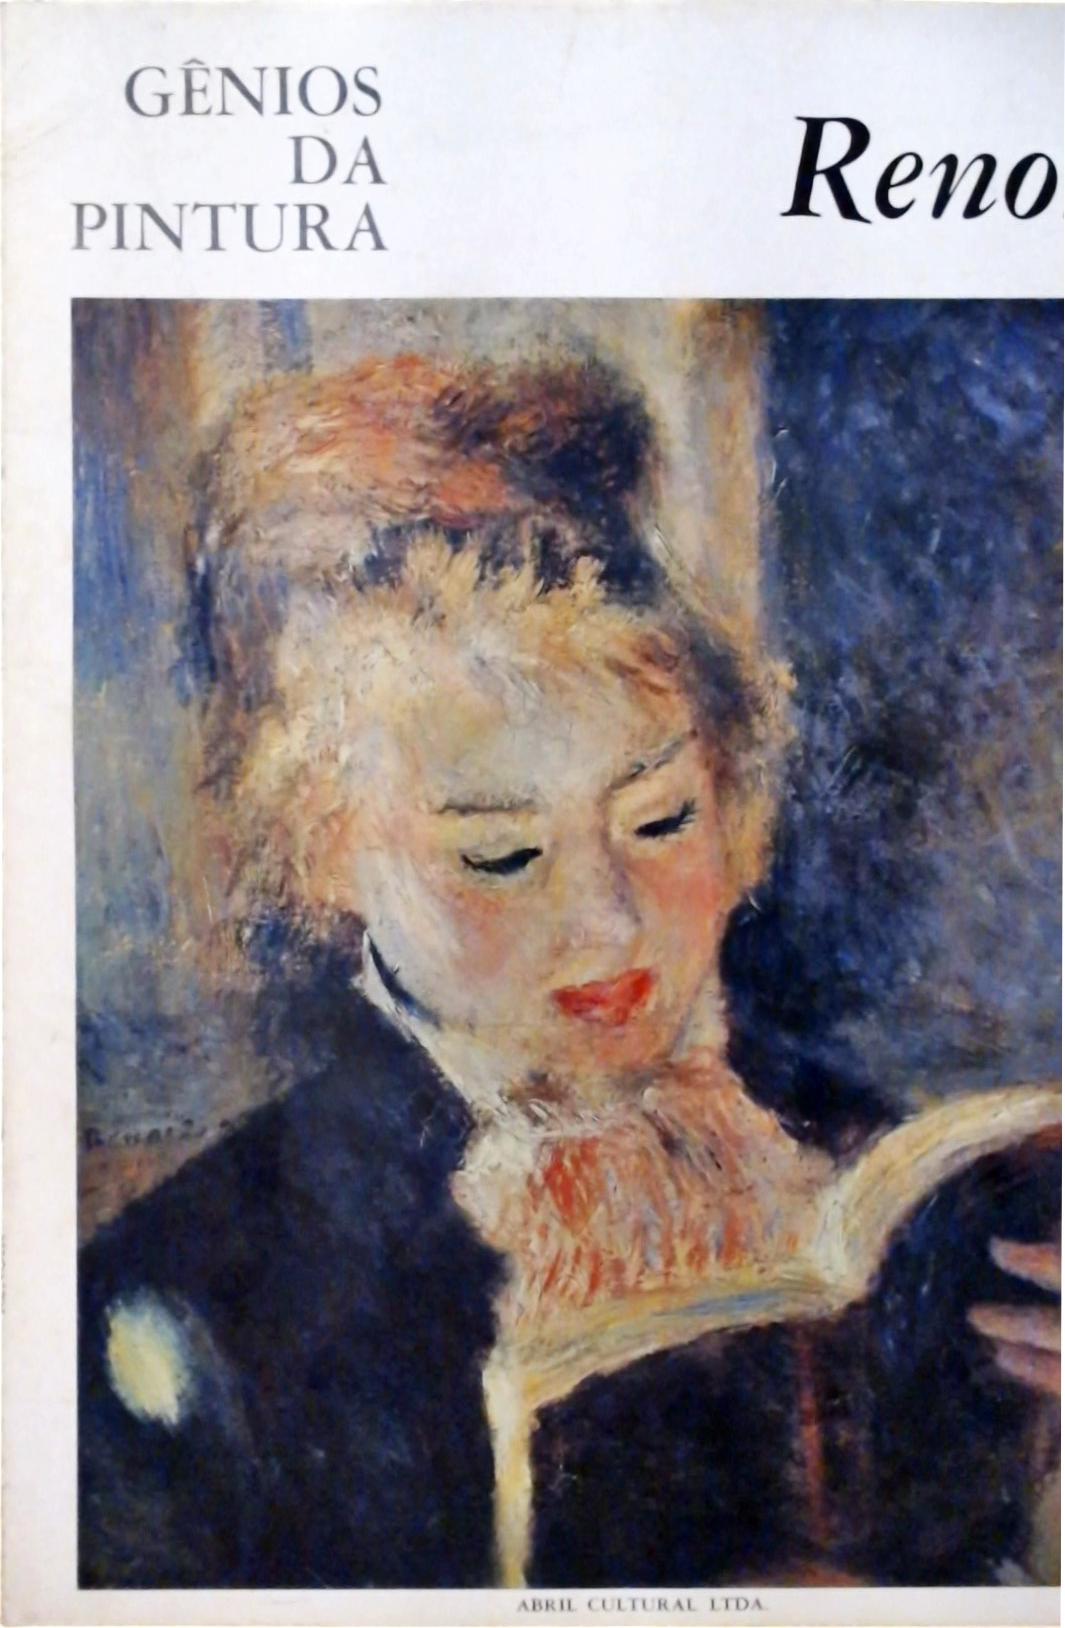 Gênios da Pintura - Renoir